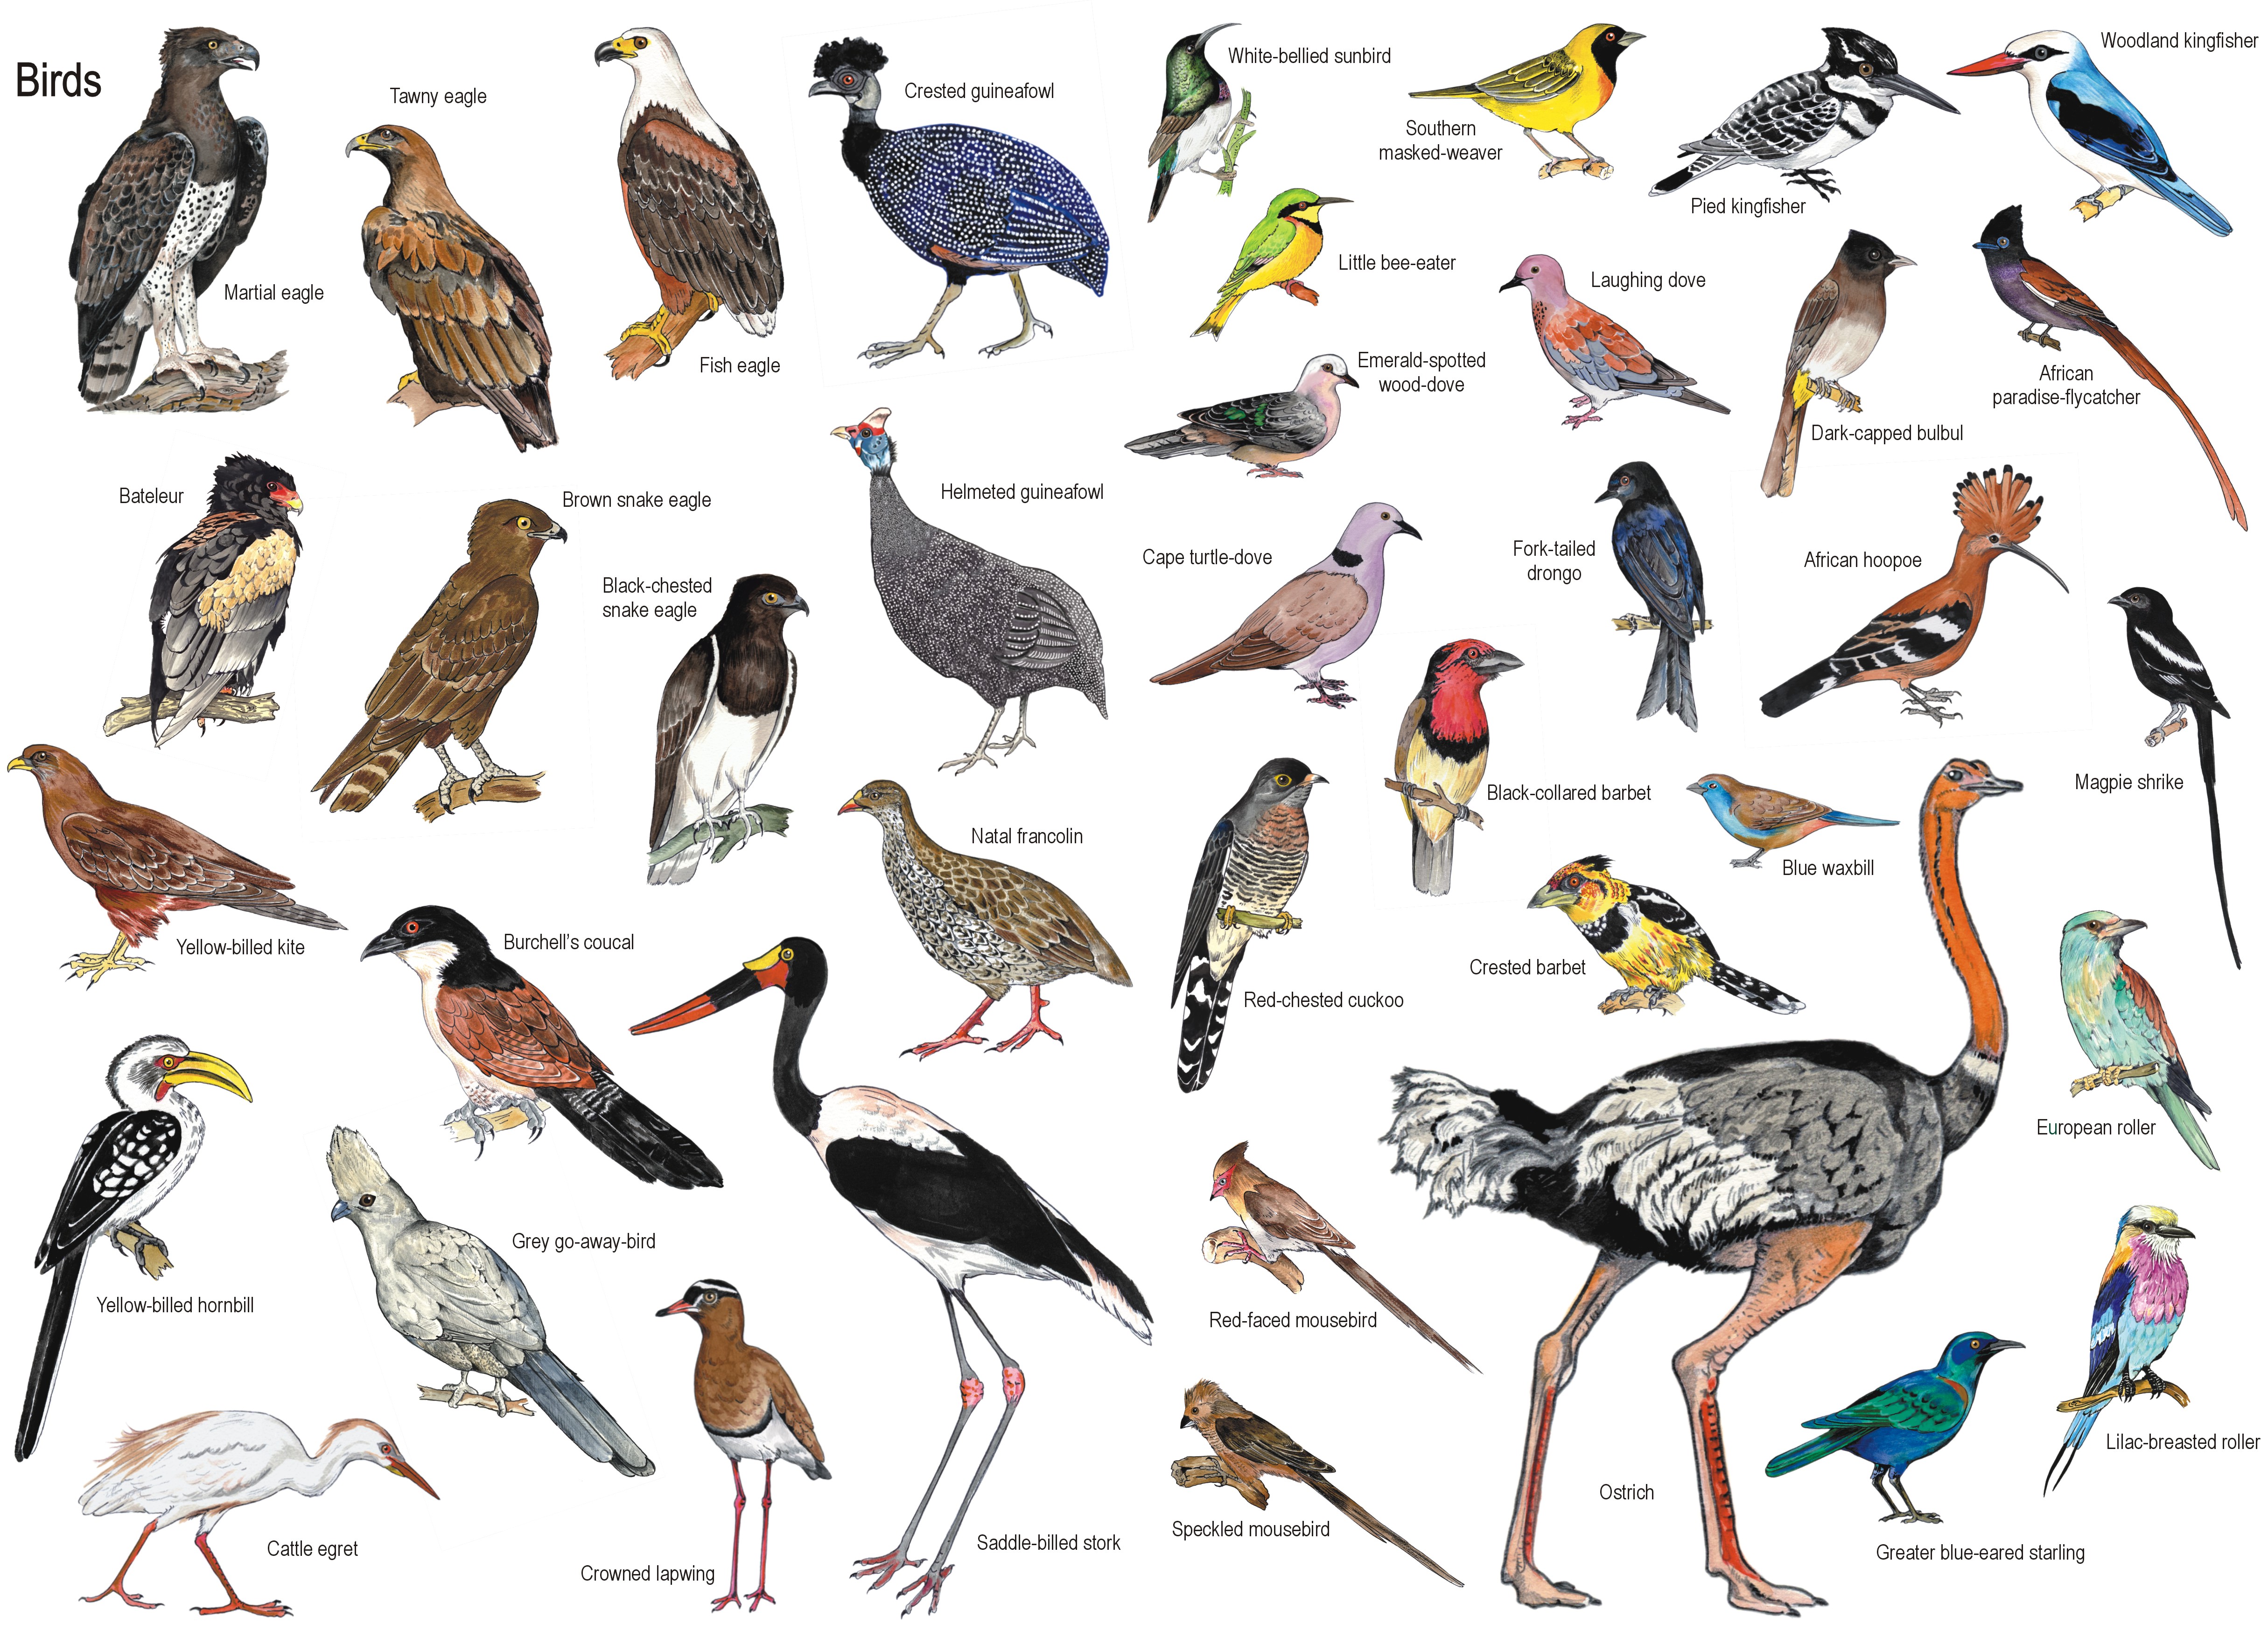 Птицы на букву и названия и фото